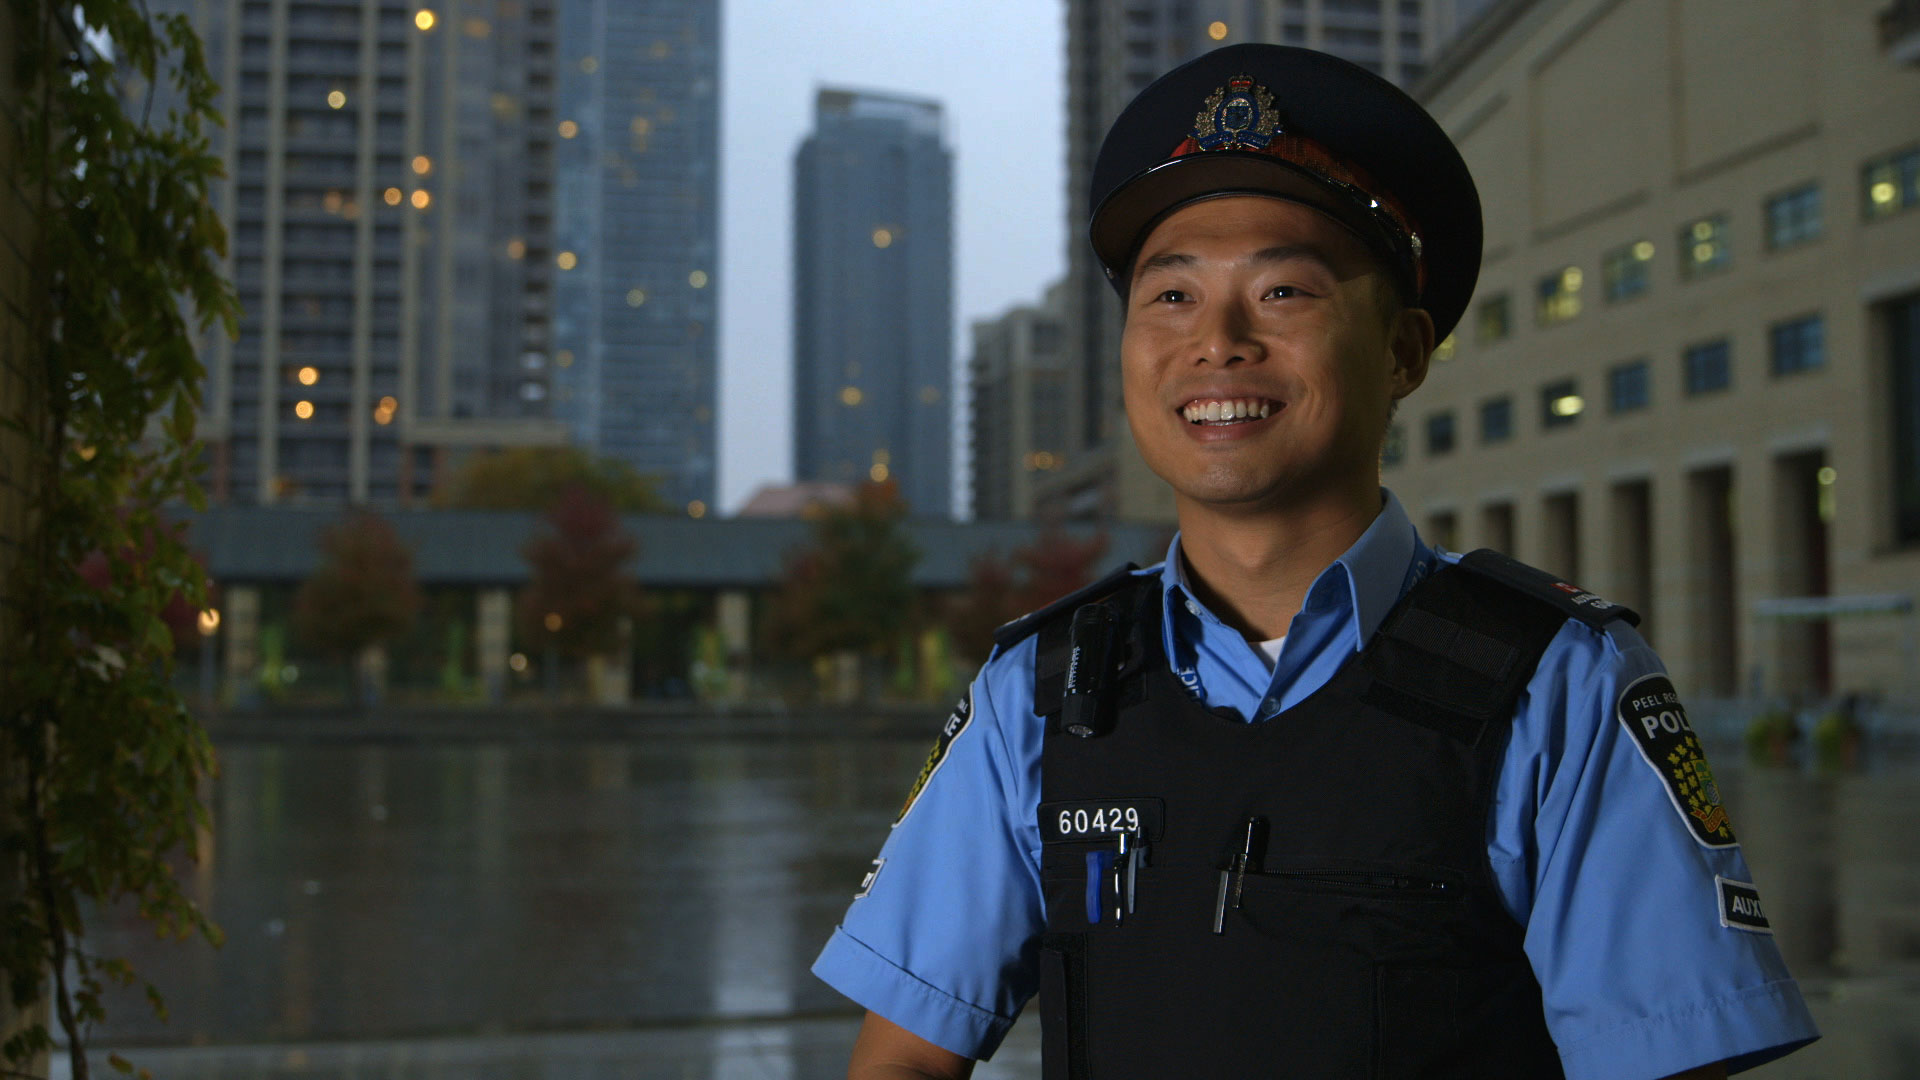 Un homme en uniforme de police, souriant, avec une rue urbaine en arrière-plan.